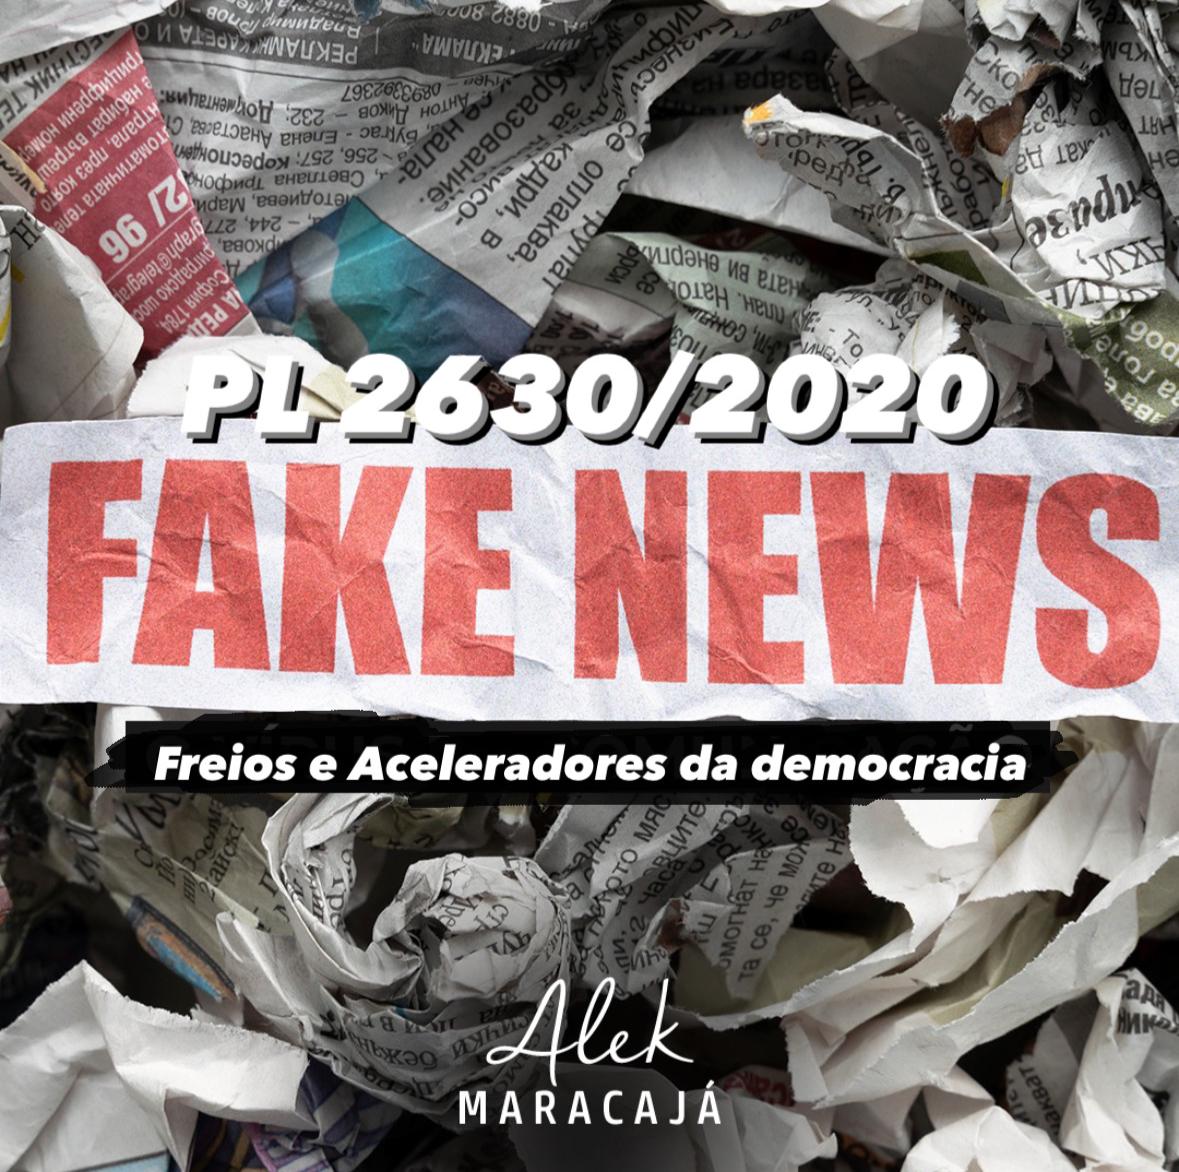 PL das fake news: freios e aceleradores da democracia